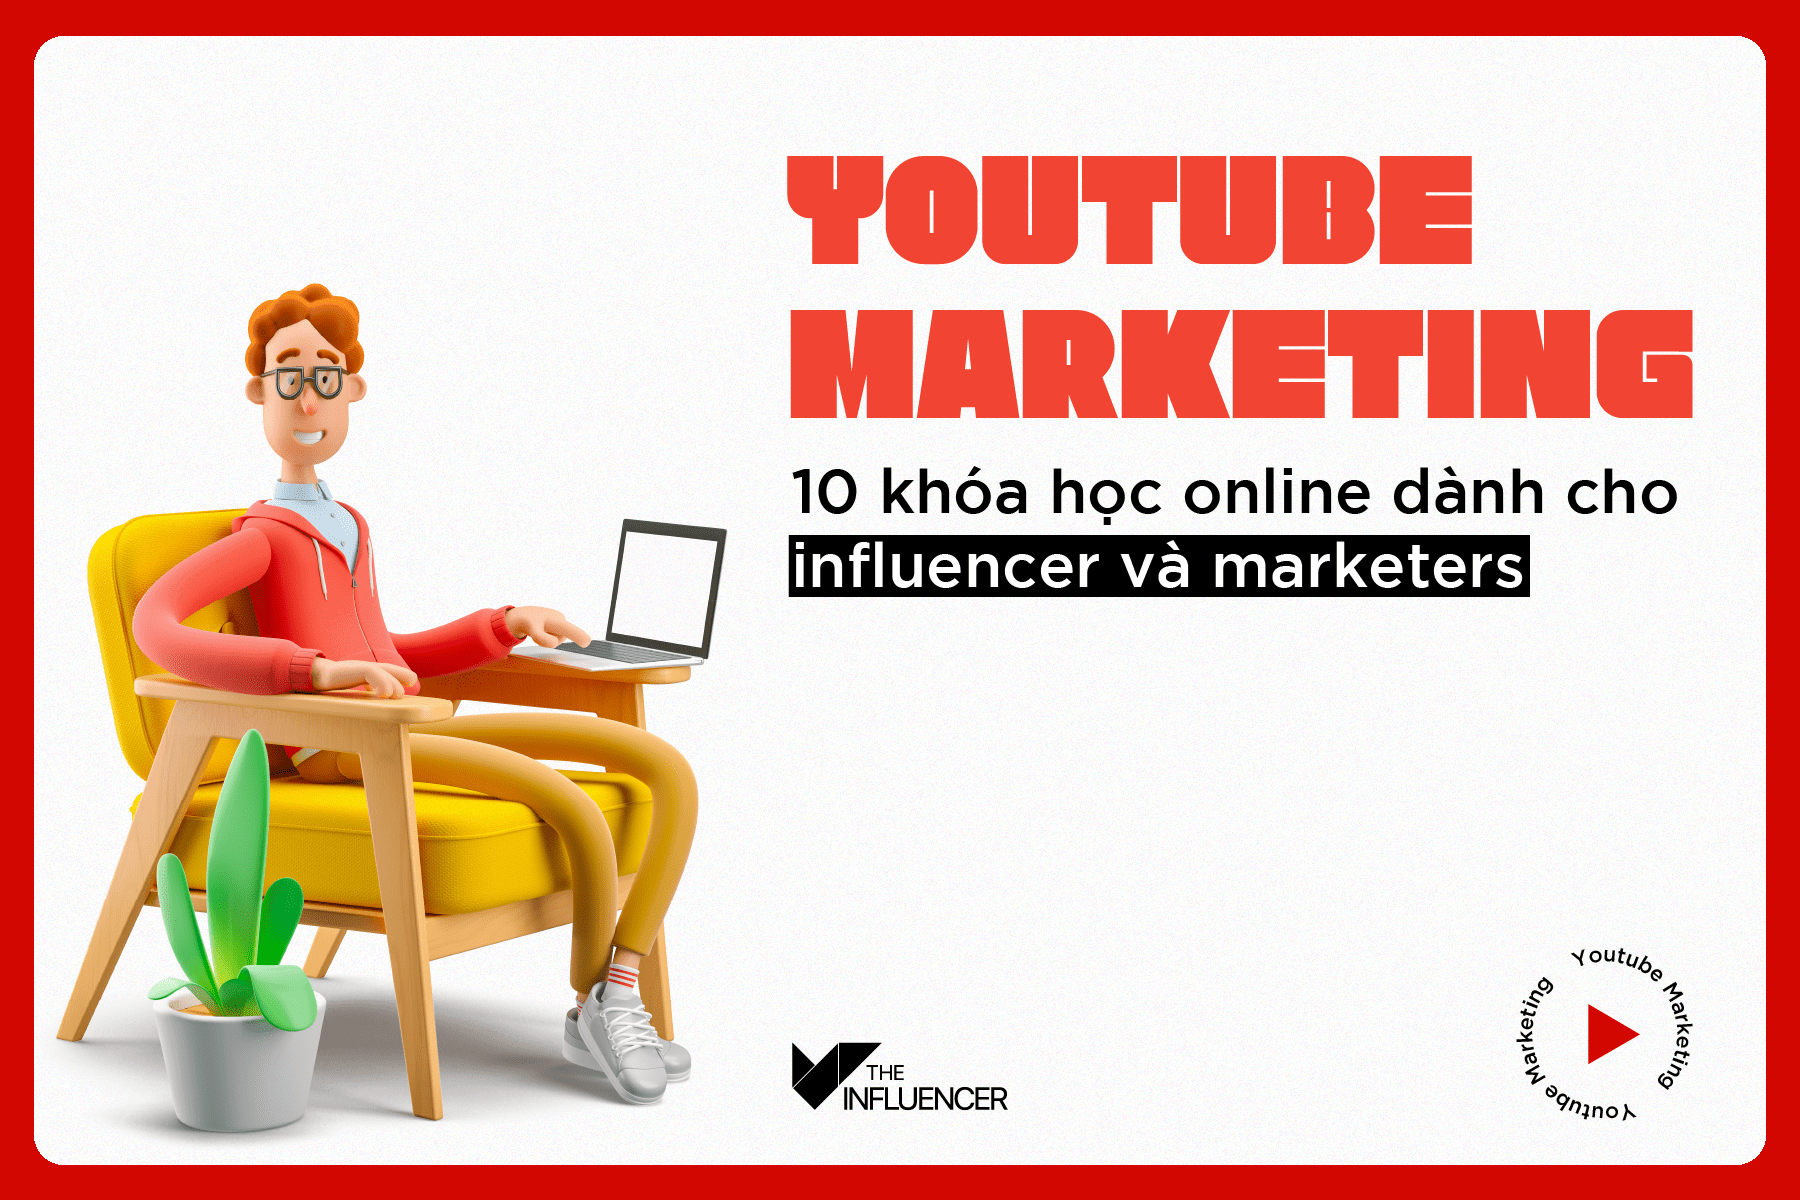 Youtube Marketing - 10 khóa học online dành cho influencer và marketers